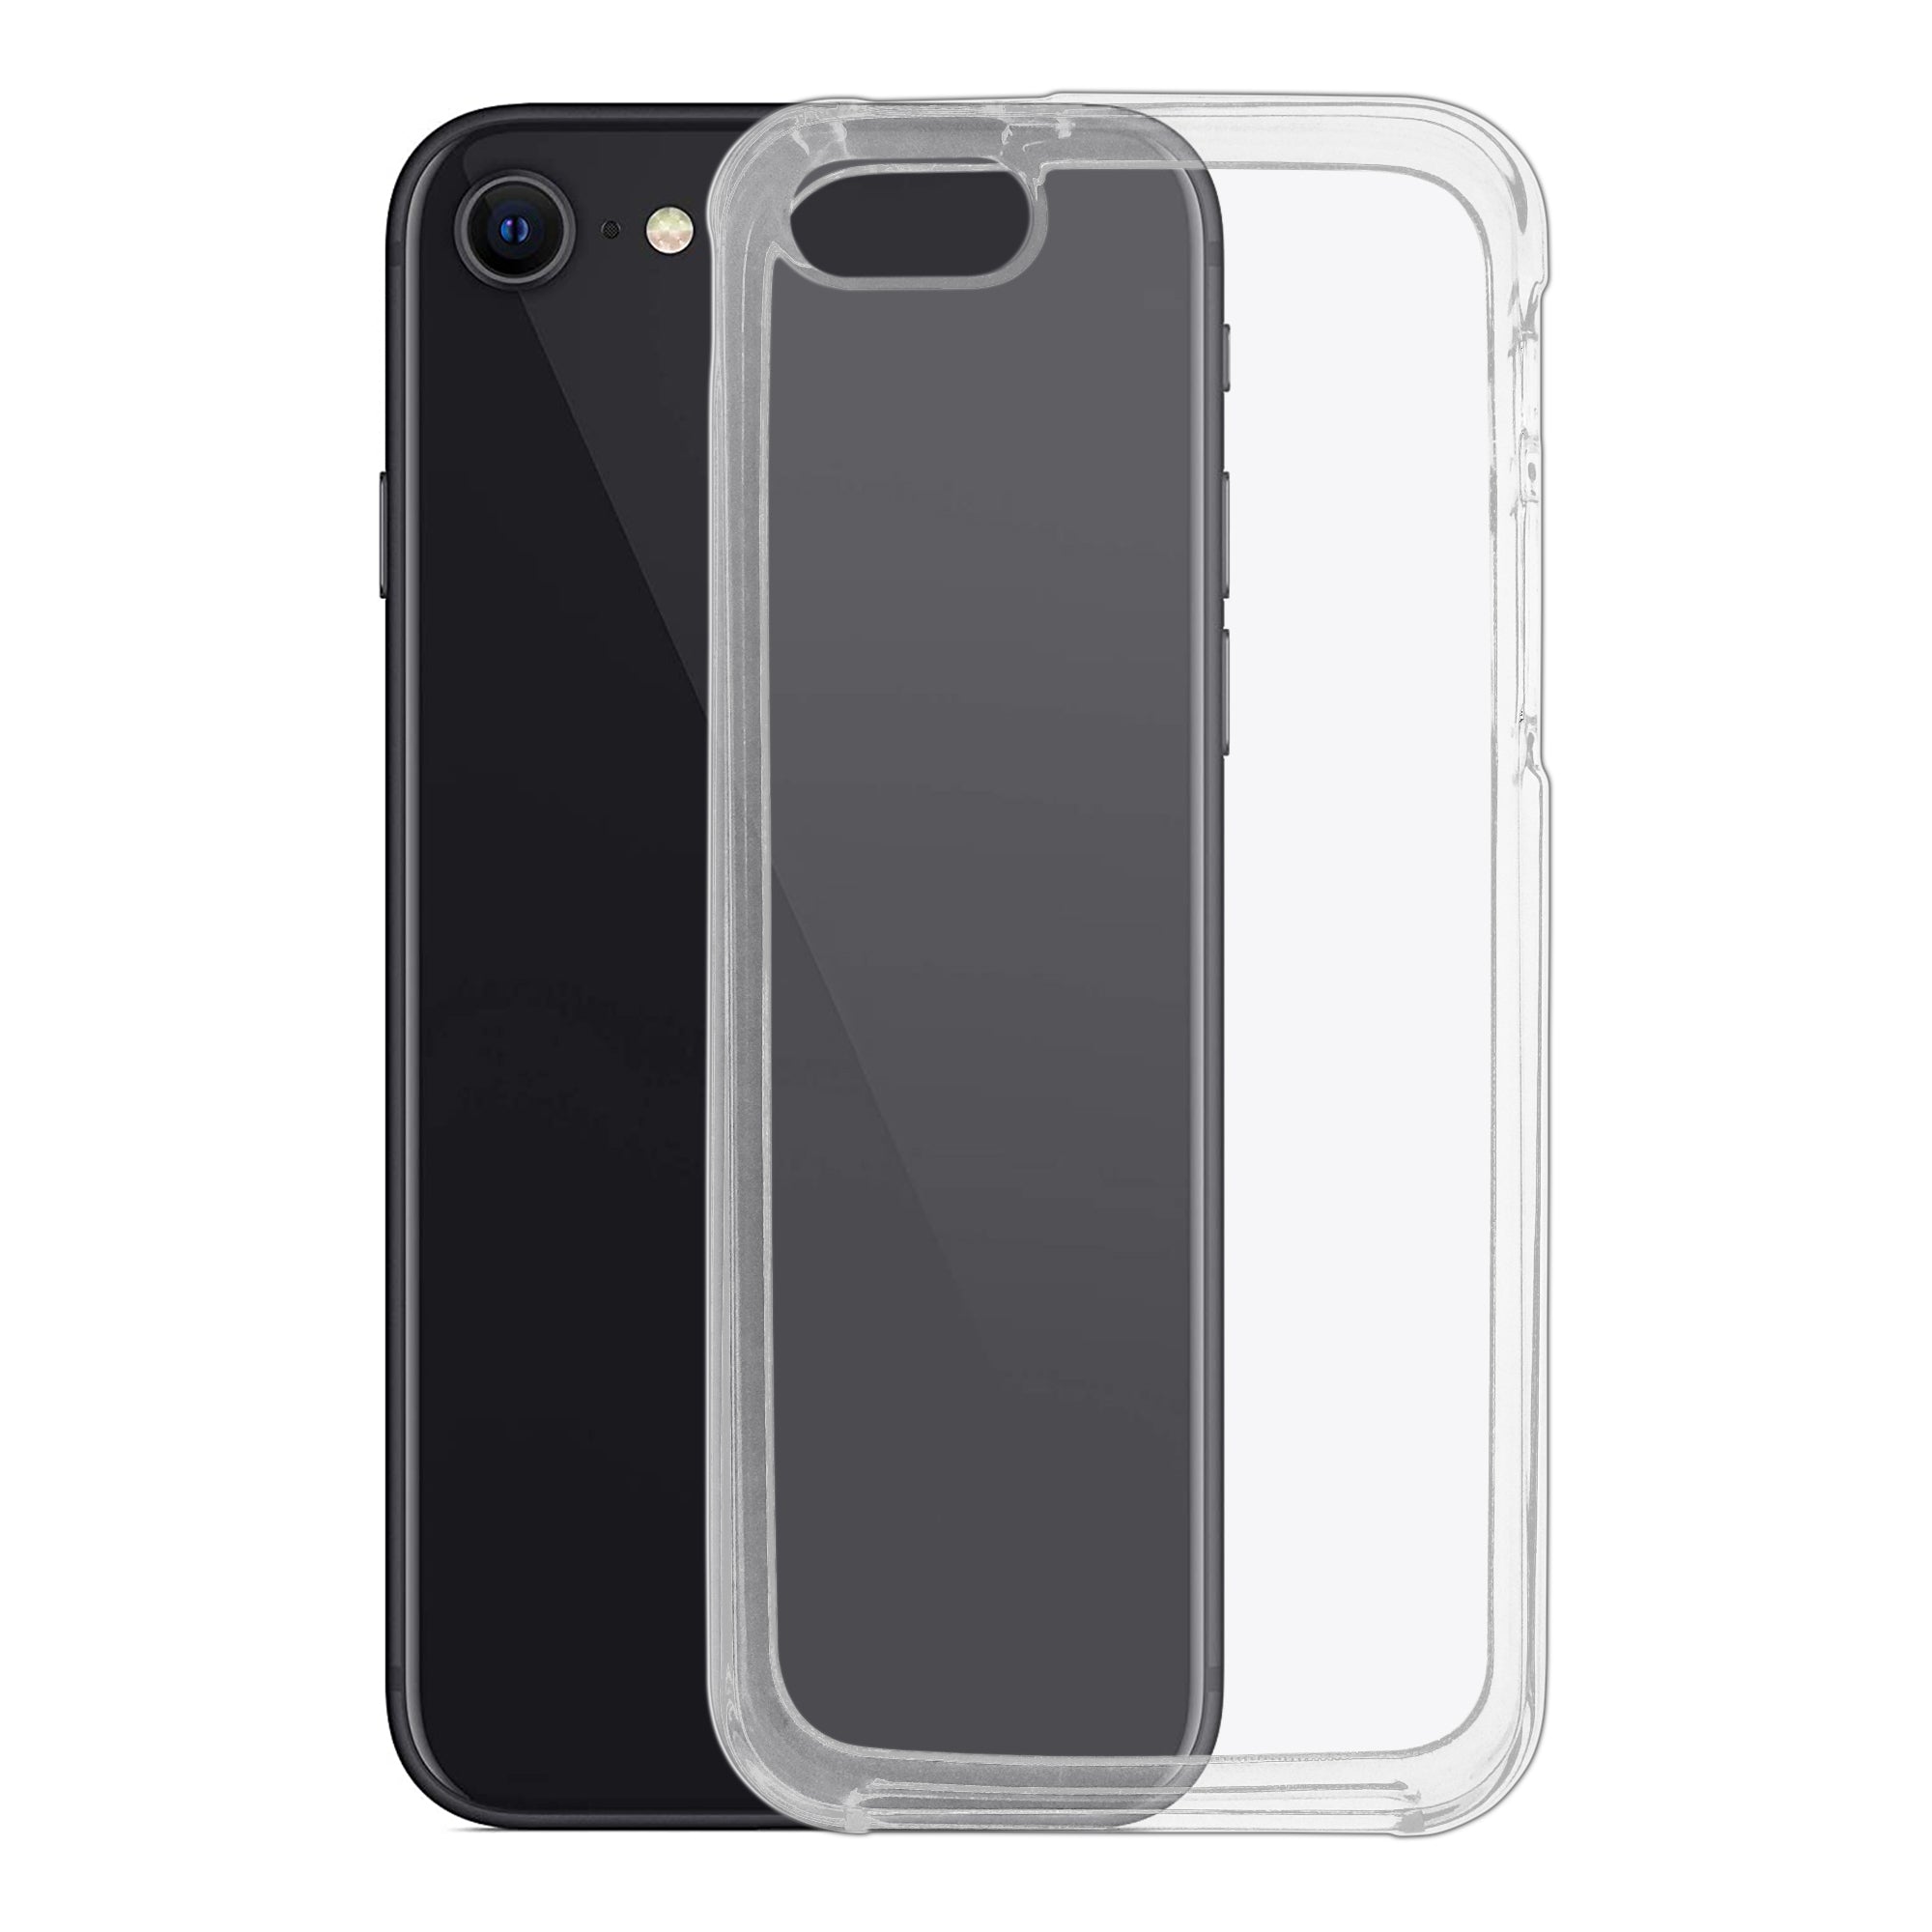 FYY - Funda para iPhone SE (1ª generación-2016)/iPhone 5S/iPhone 5,  [función de soporte] funda de piel sintética de lujo tipo cartera [con  ranuras